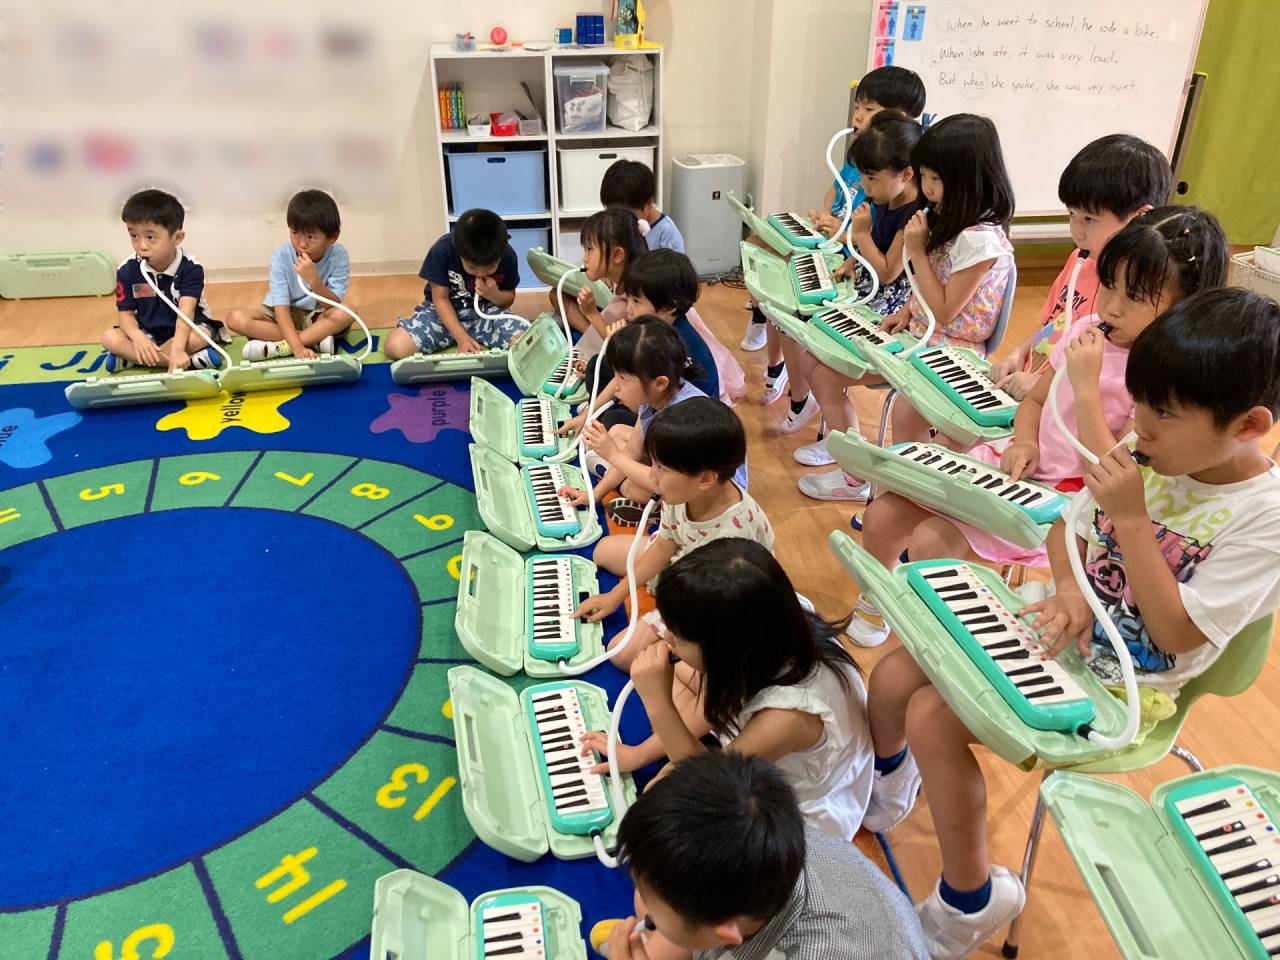 Let's Play Pianica! (ピアニカを弾こう!) ★ Kindy 3 (年長クラス)